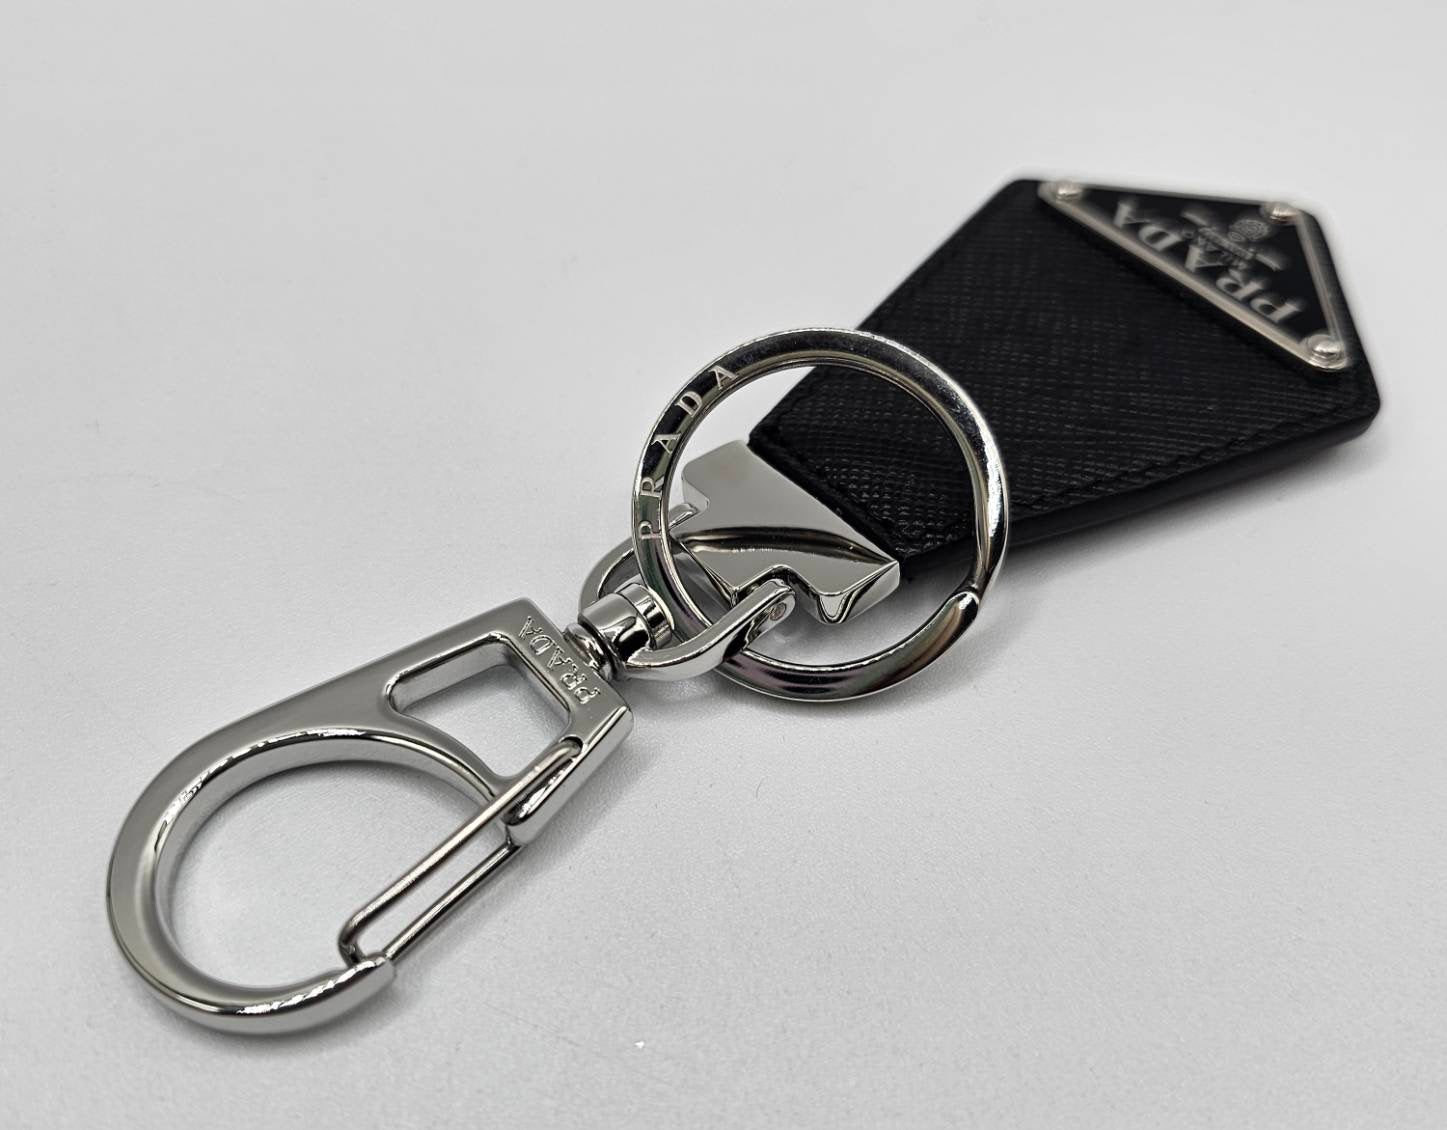 Prada Black Saffiano Leather Keychain